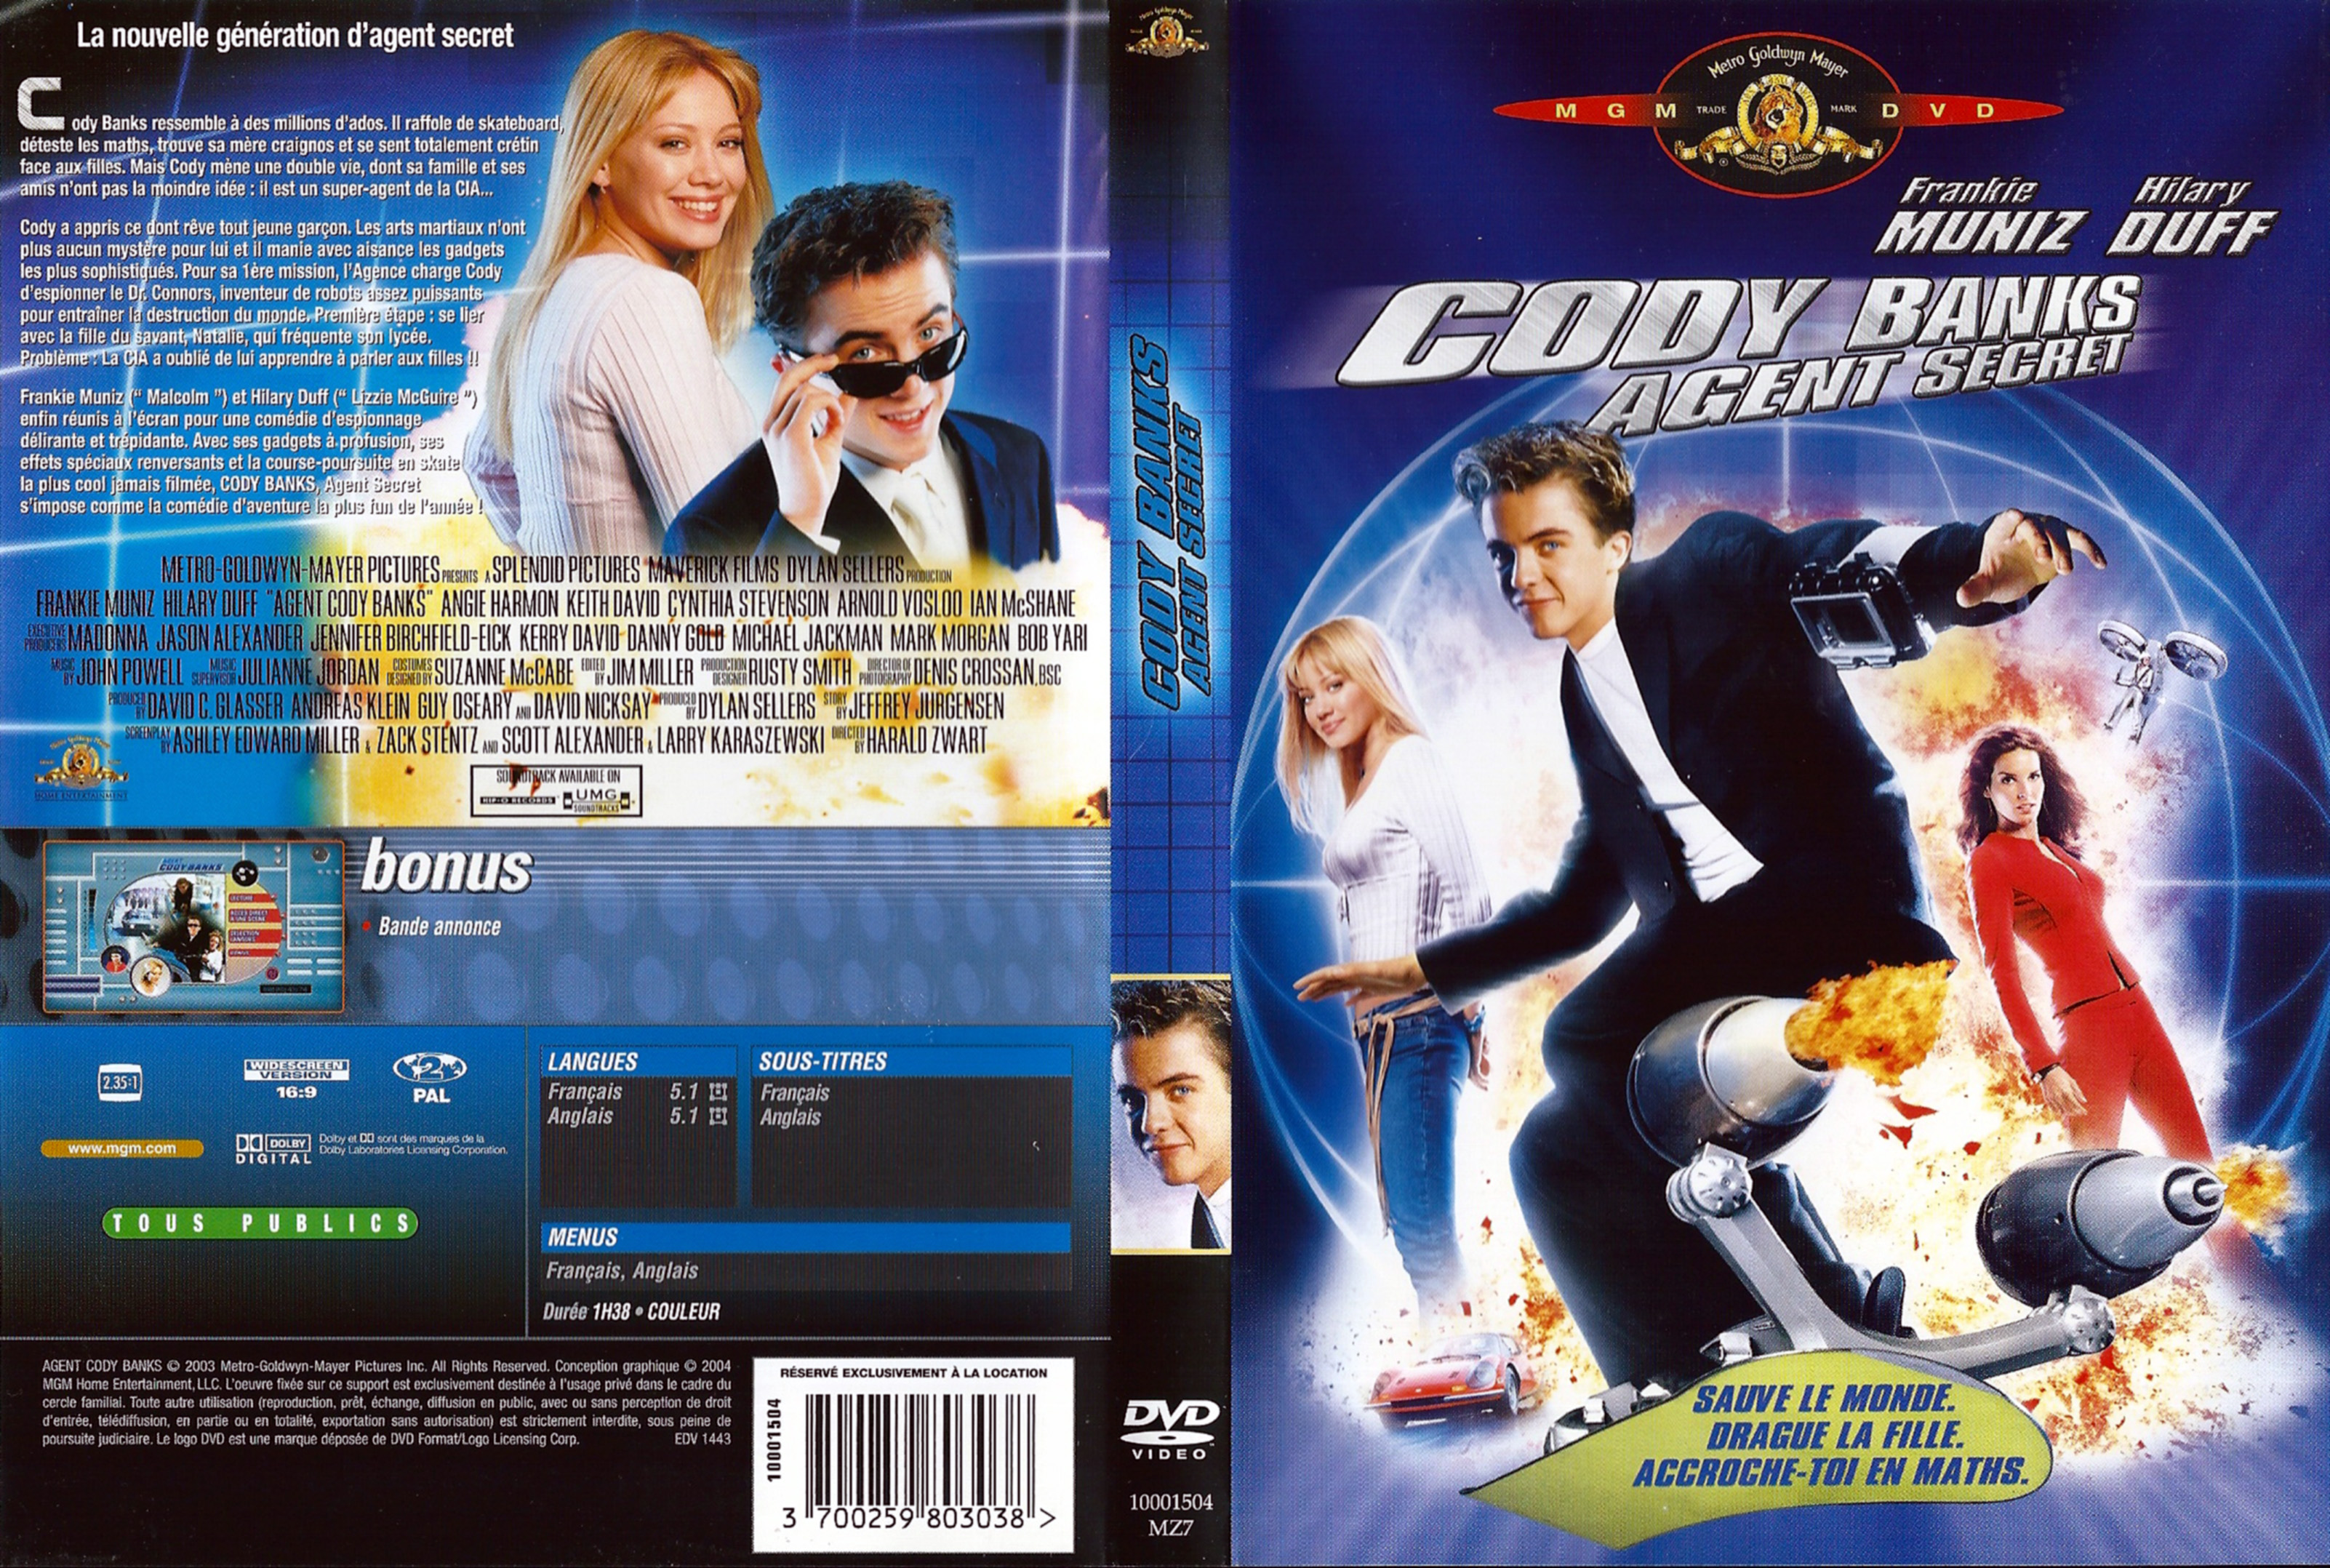 Jaquette DVD Cody Banks agent secret